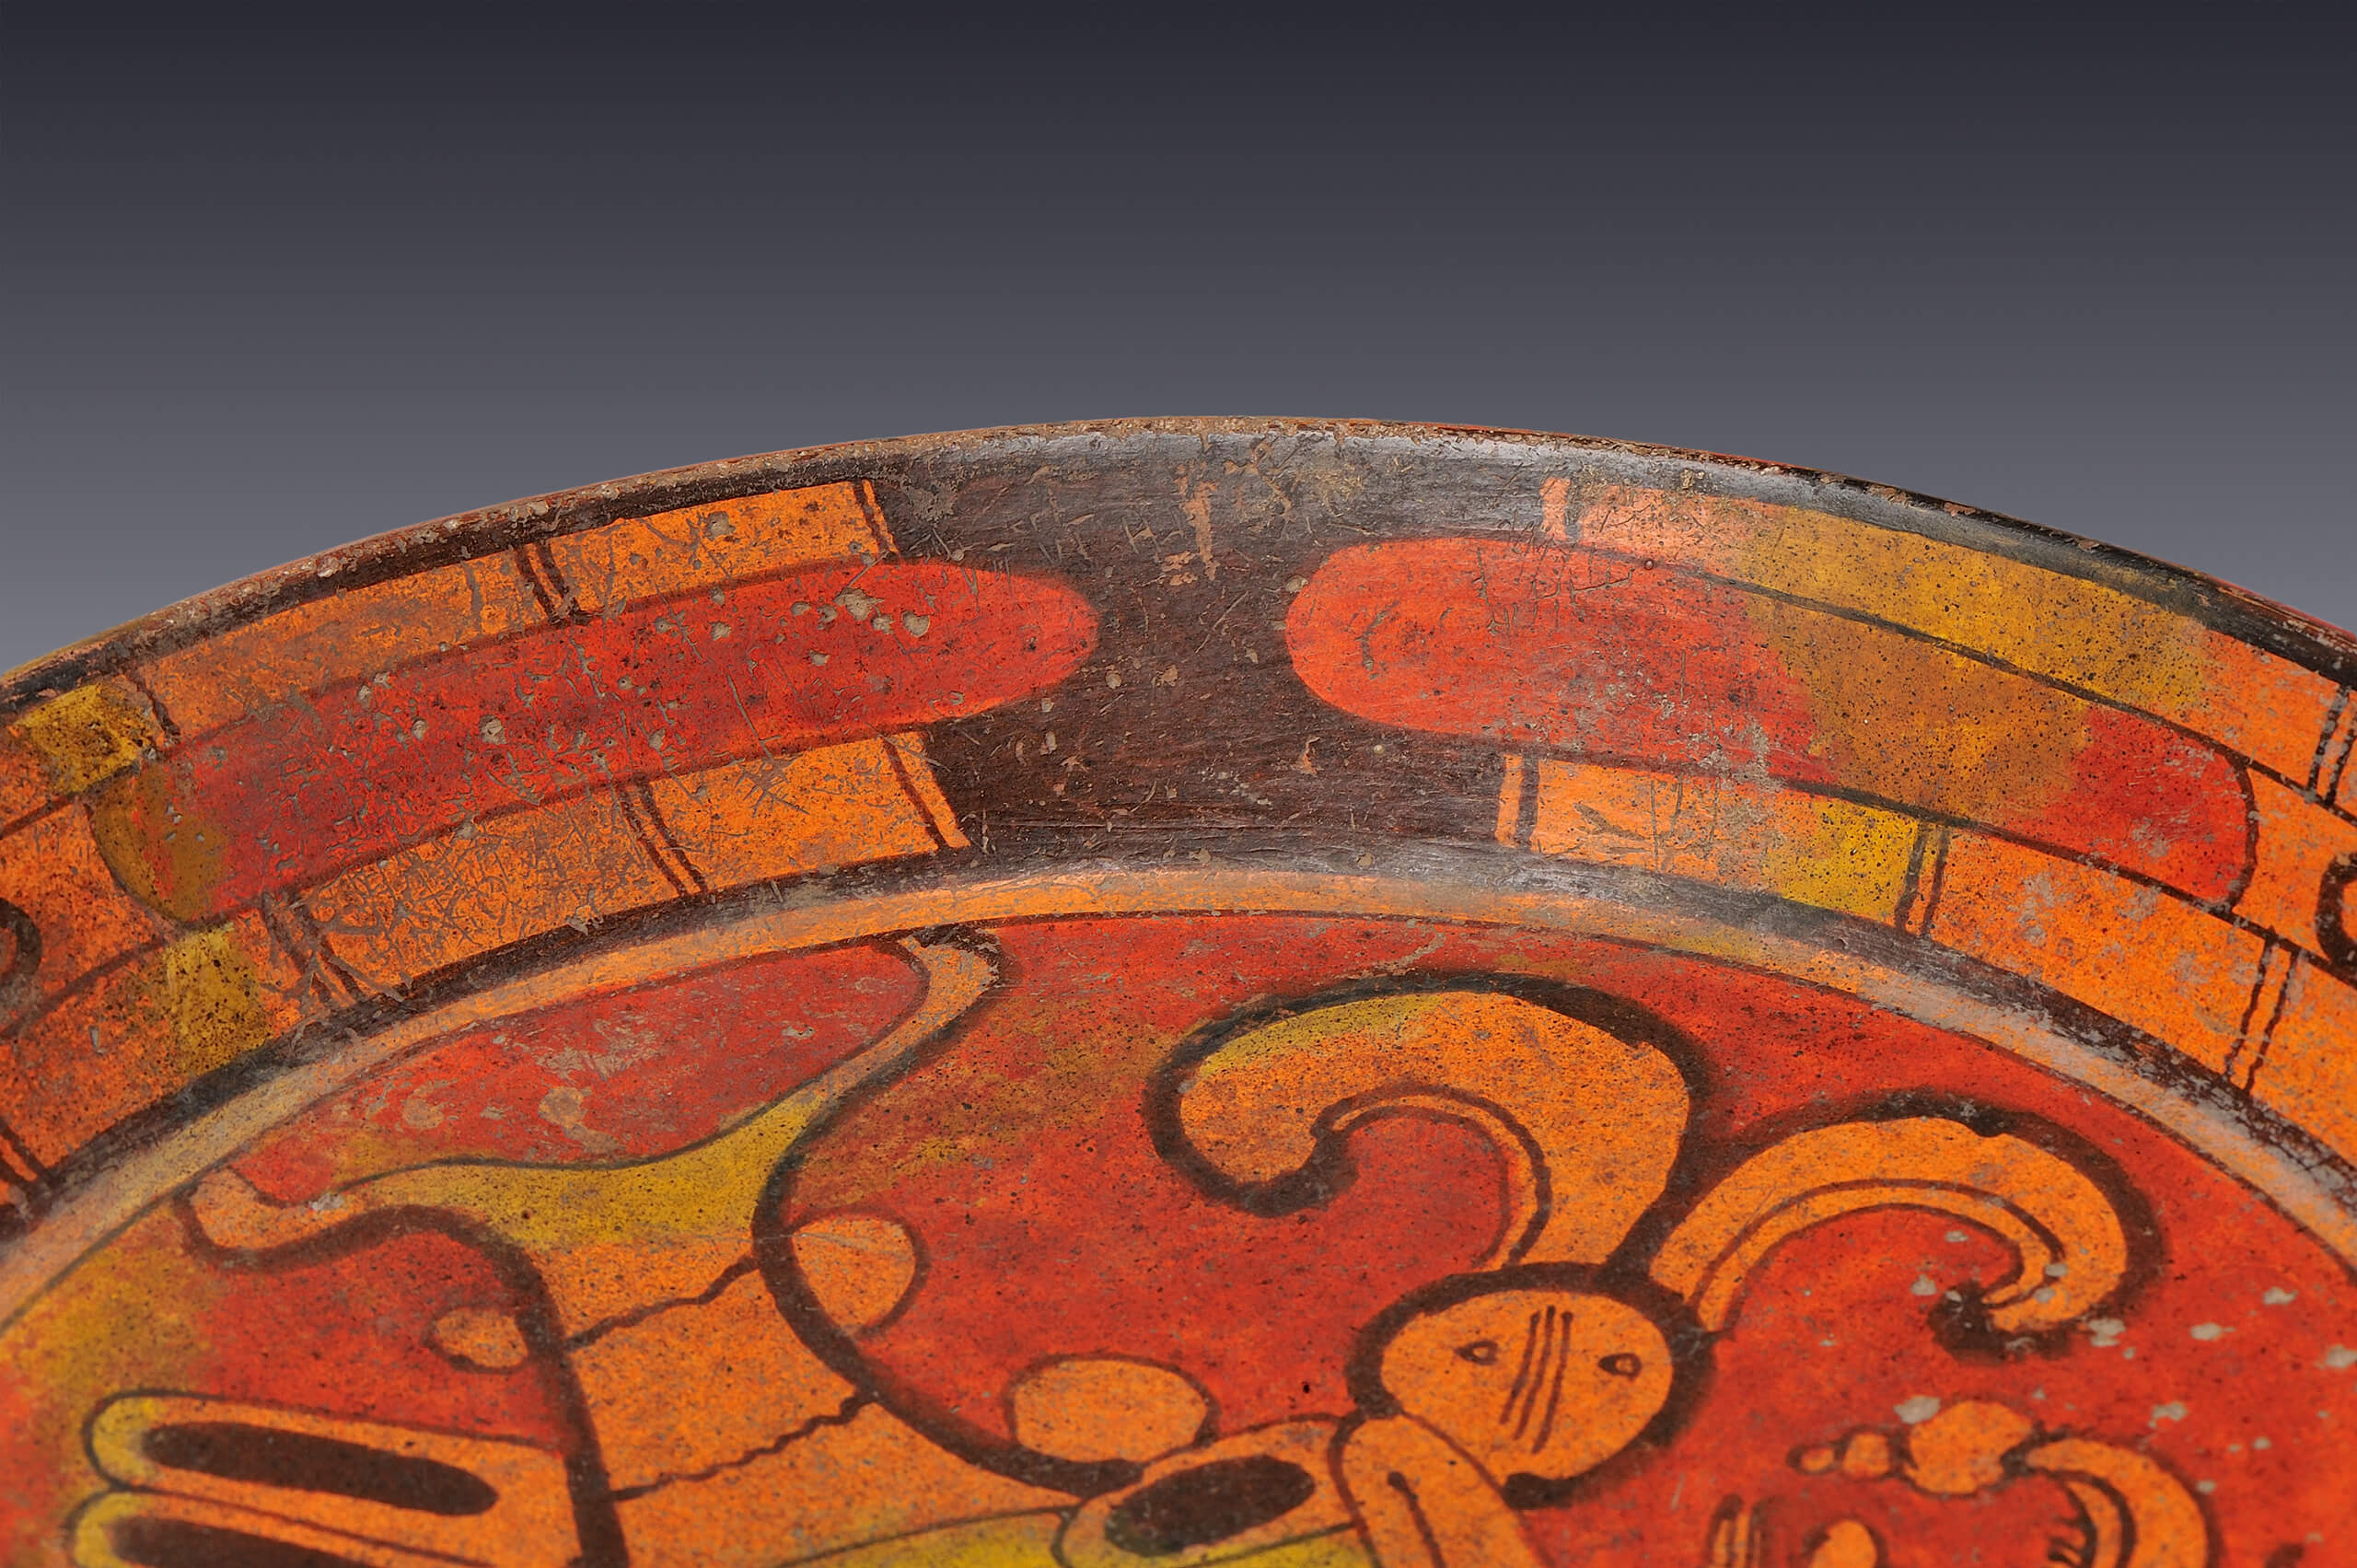 Plato trípode decorado con la figura de un ave | El México antiguo. Salas de Arte Prehispánico | Museo Amparo, Puebla